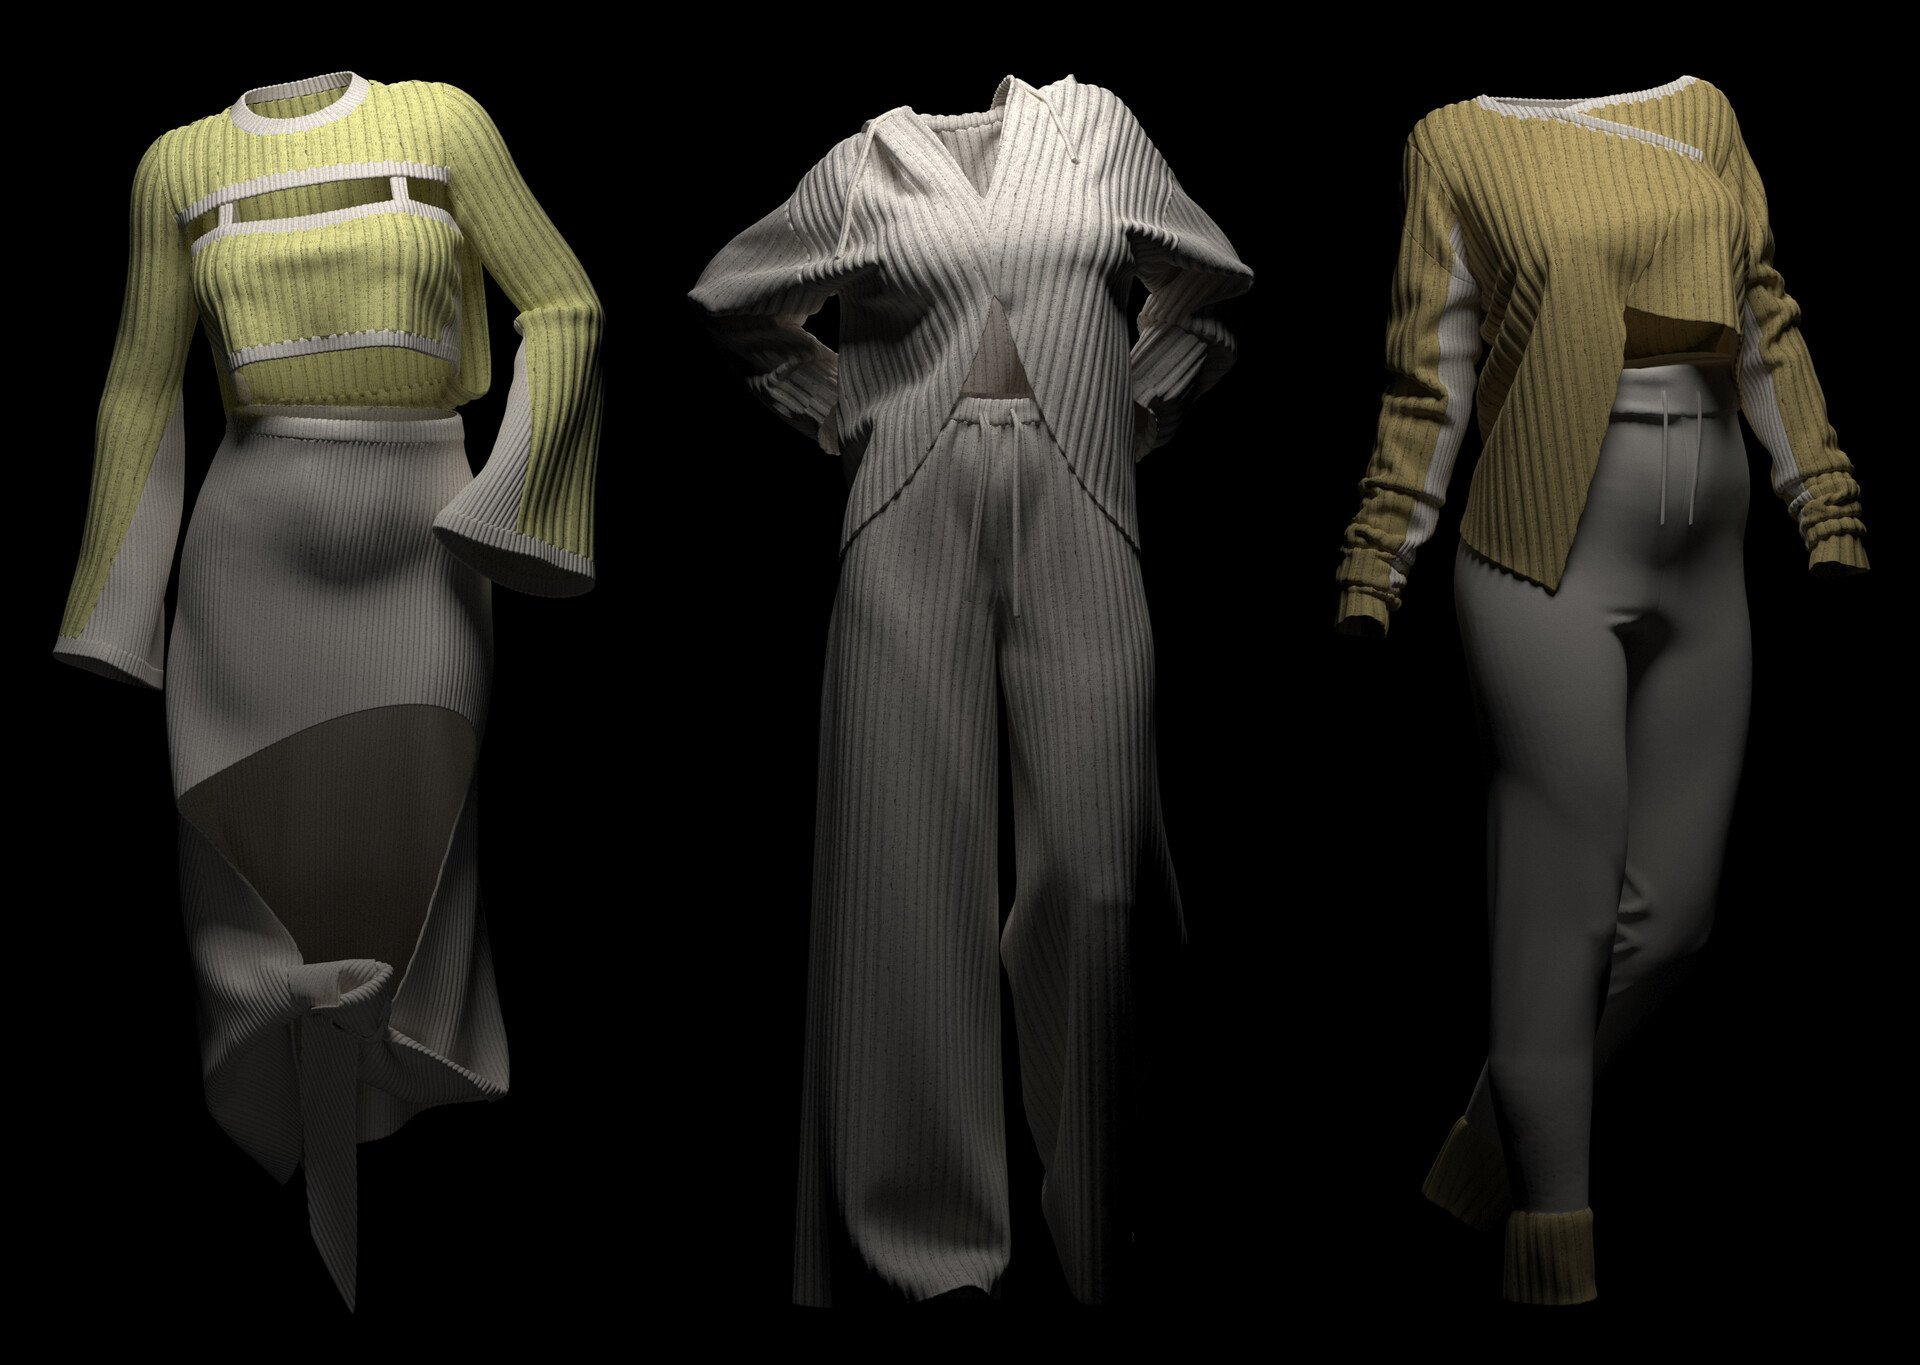 Fabric rendering v1. Marvelous Designer штаны. Clo 3d одежда. 3d моделирование одежды. Рендеринг одежды.